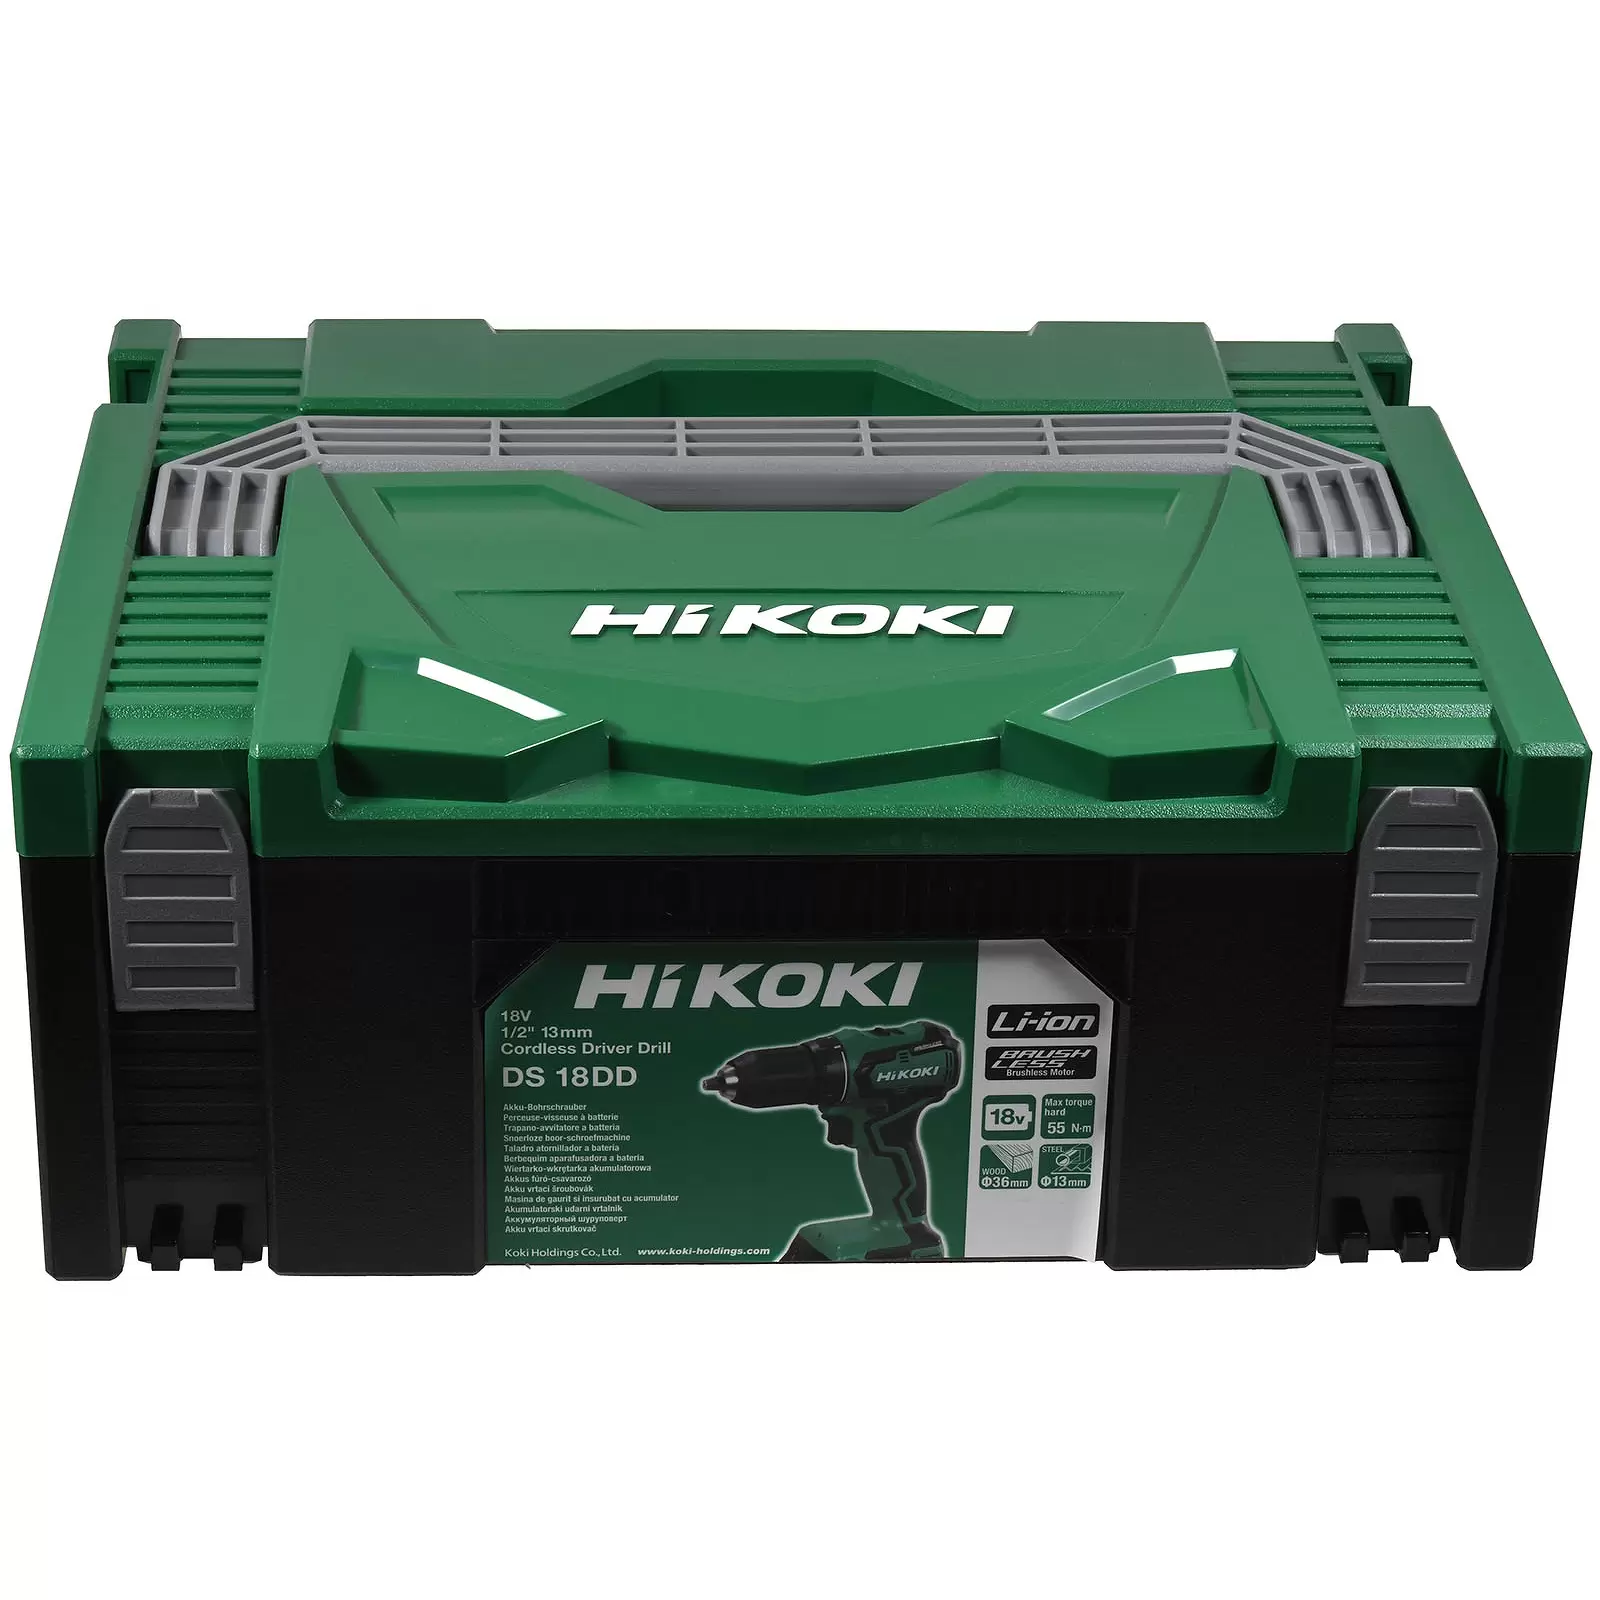 HiKOKi Hit-System Case Transportkoffer HSC II, Grün/Schwarz